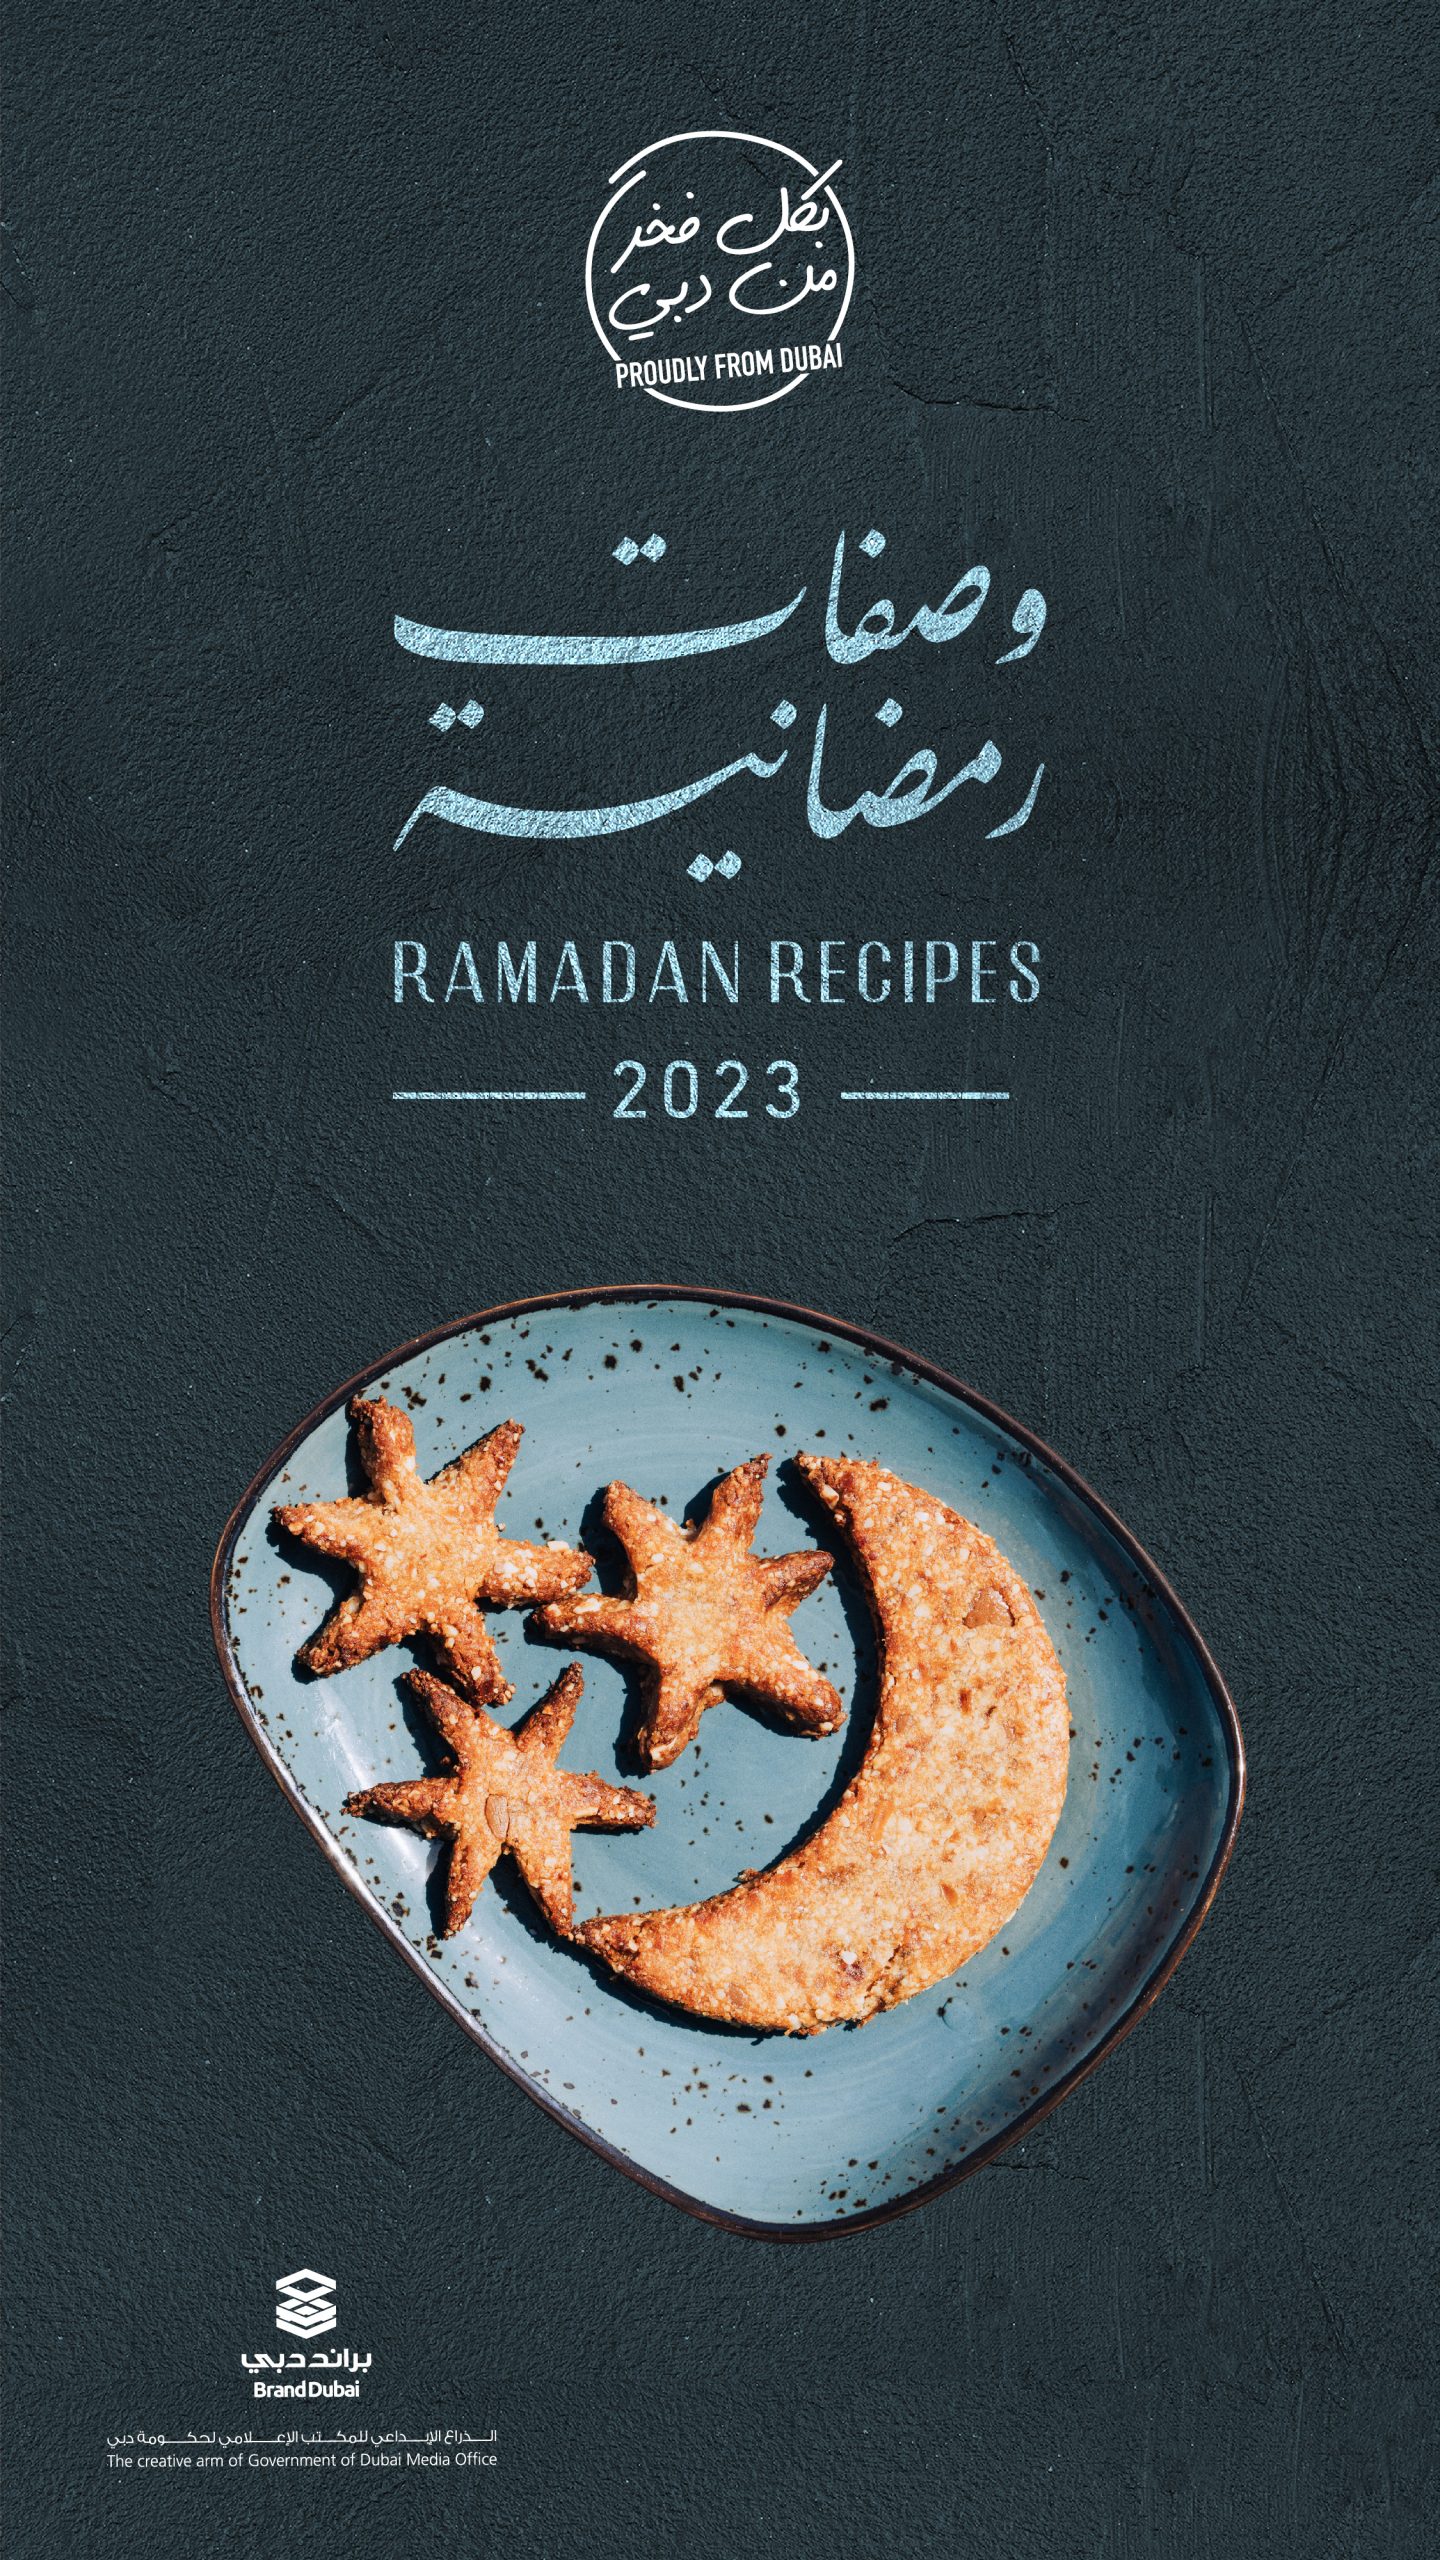 Ramadan Recipes Guide